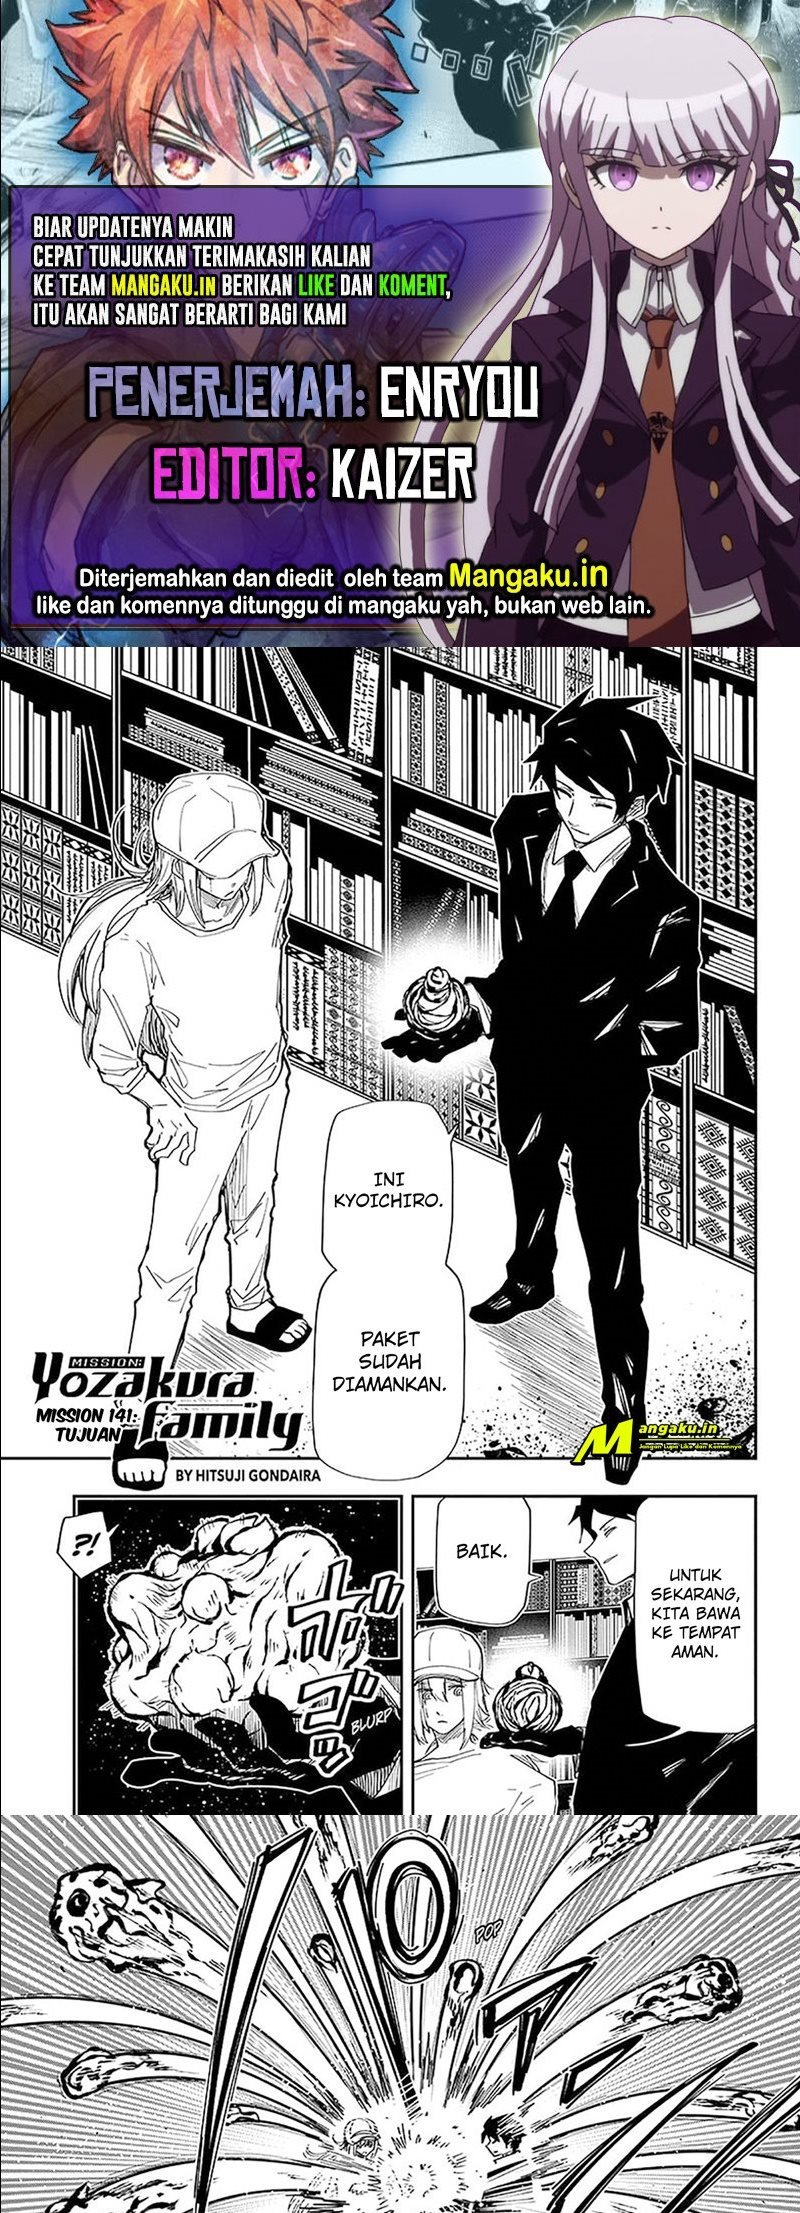 Mission: Yozakura Family Chapter 141